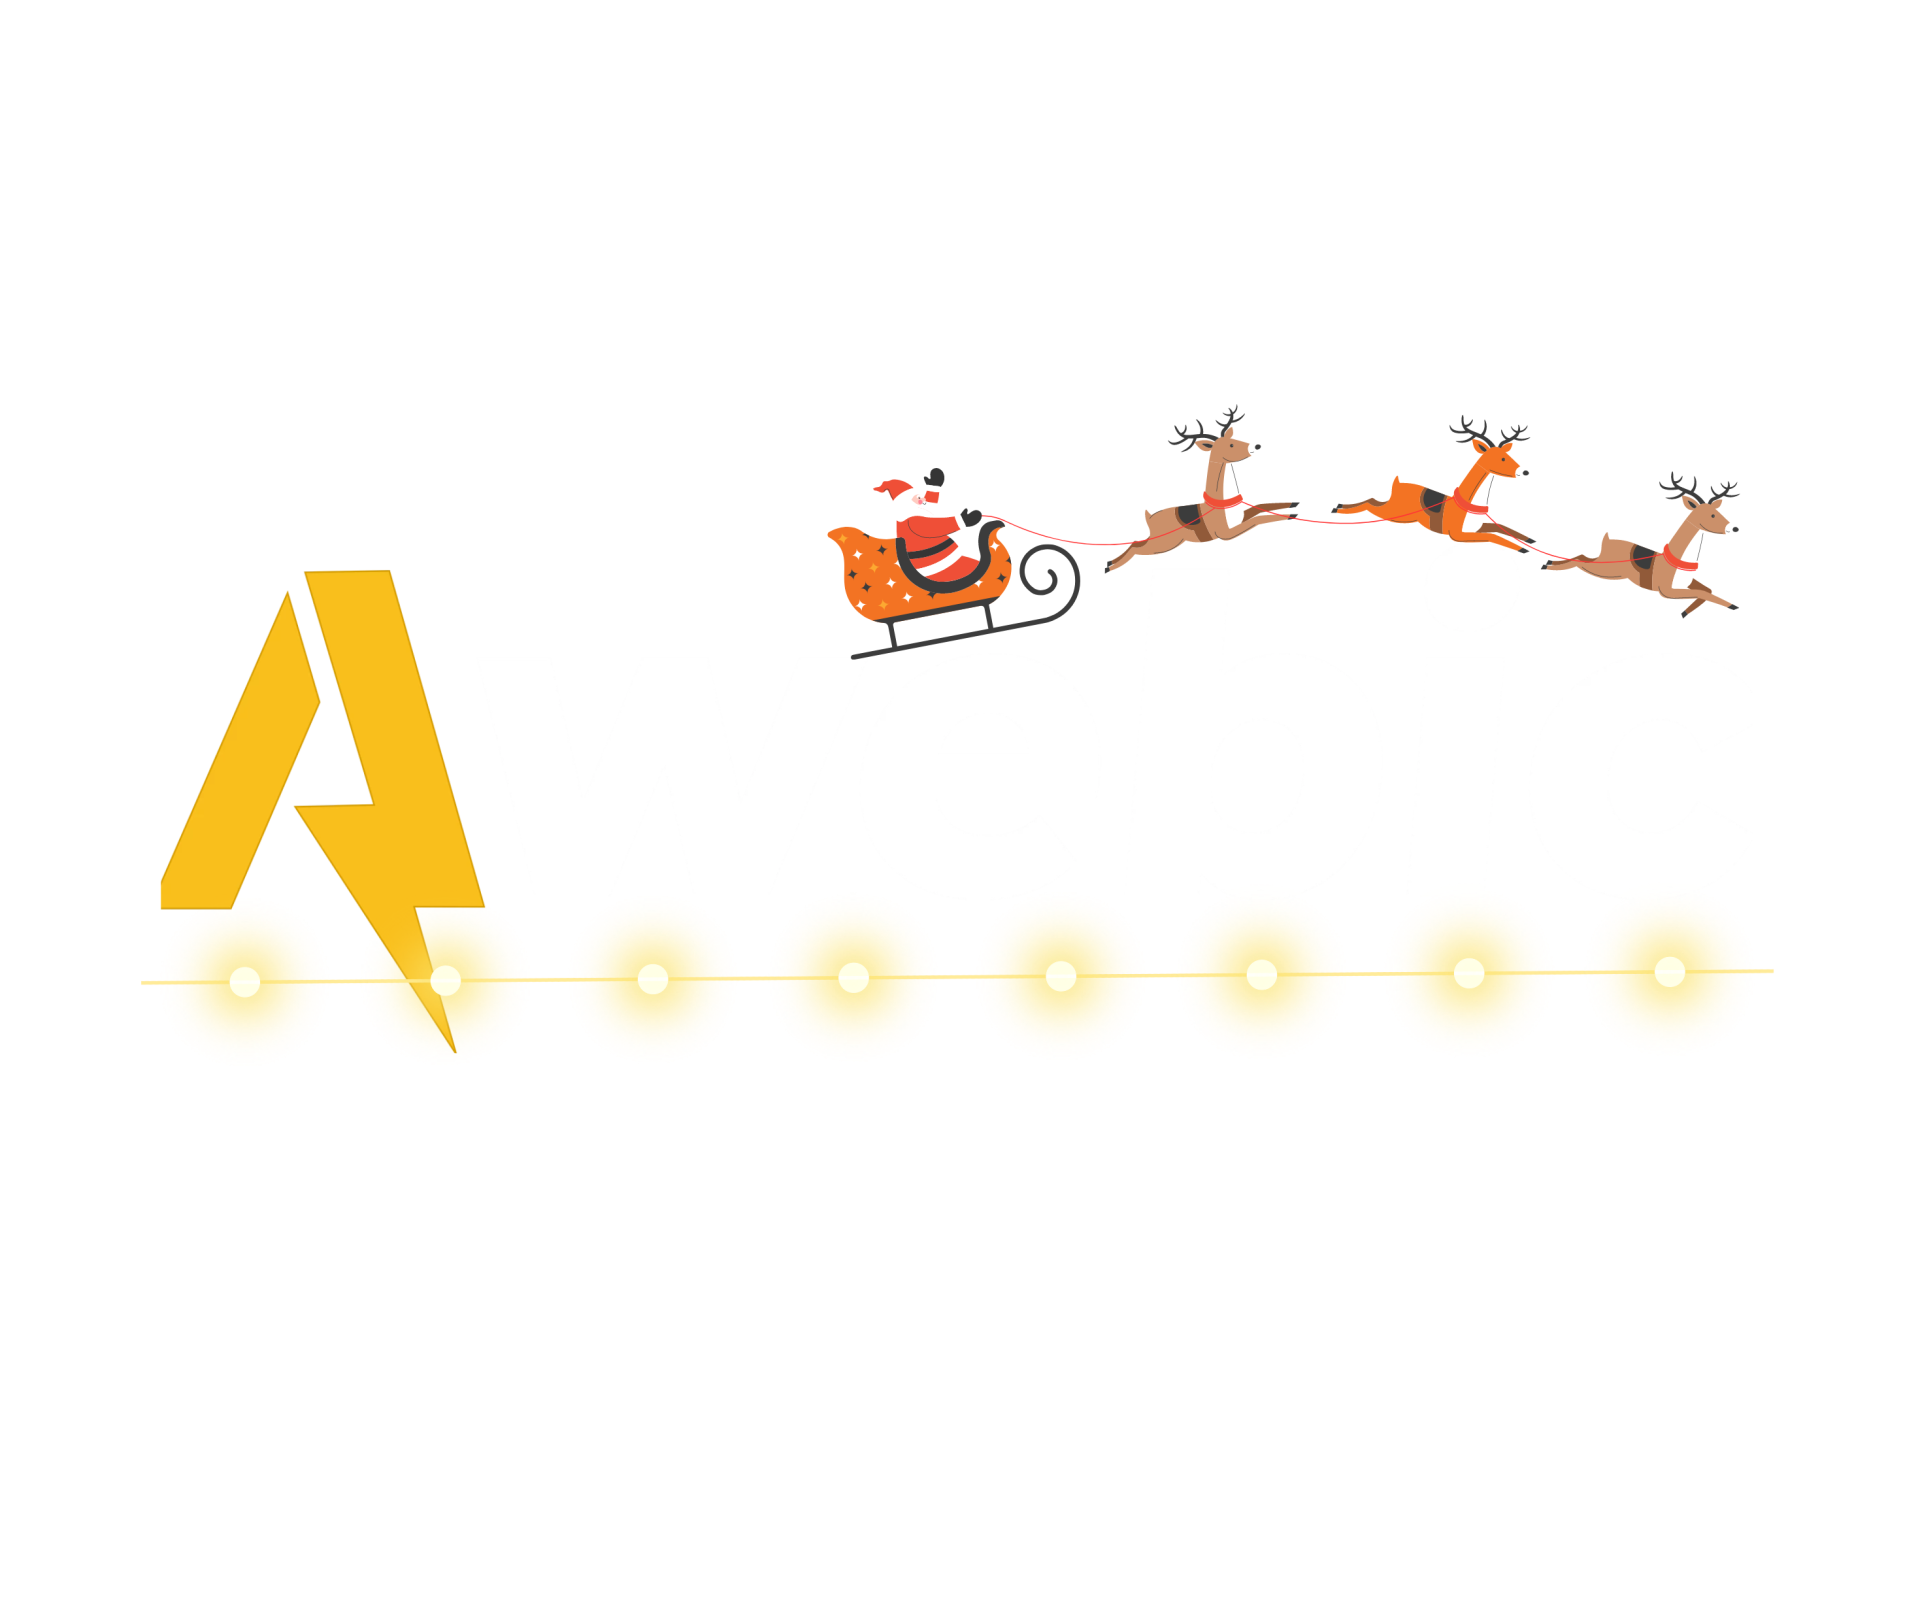 Awebic | Histórias que Inspiram